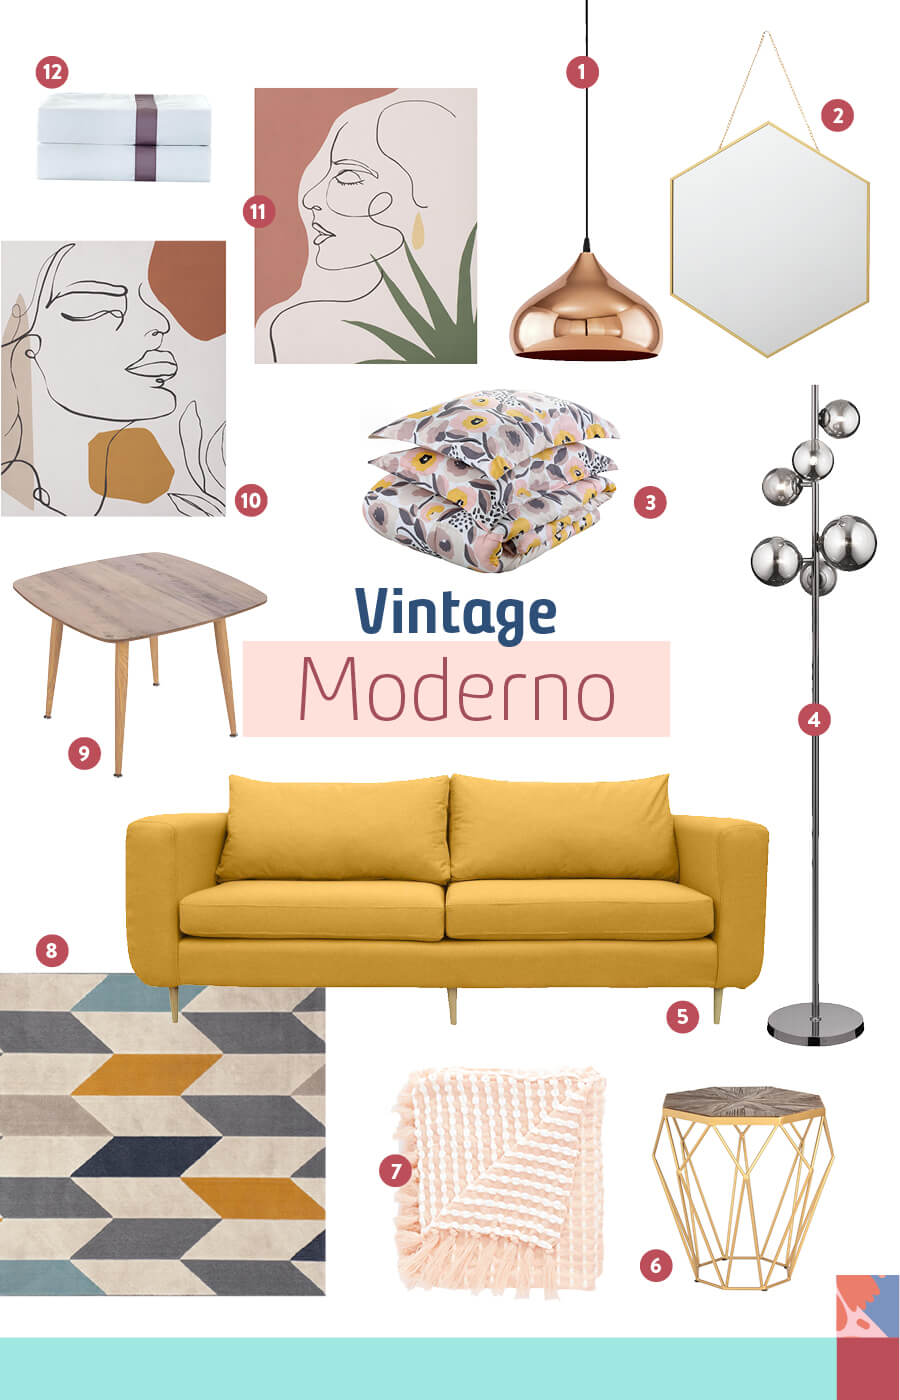 cuadros, lámparas, cojines, sillón y silla para lograr una decoración vintage o estilo vintage moderno